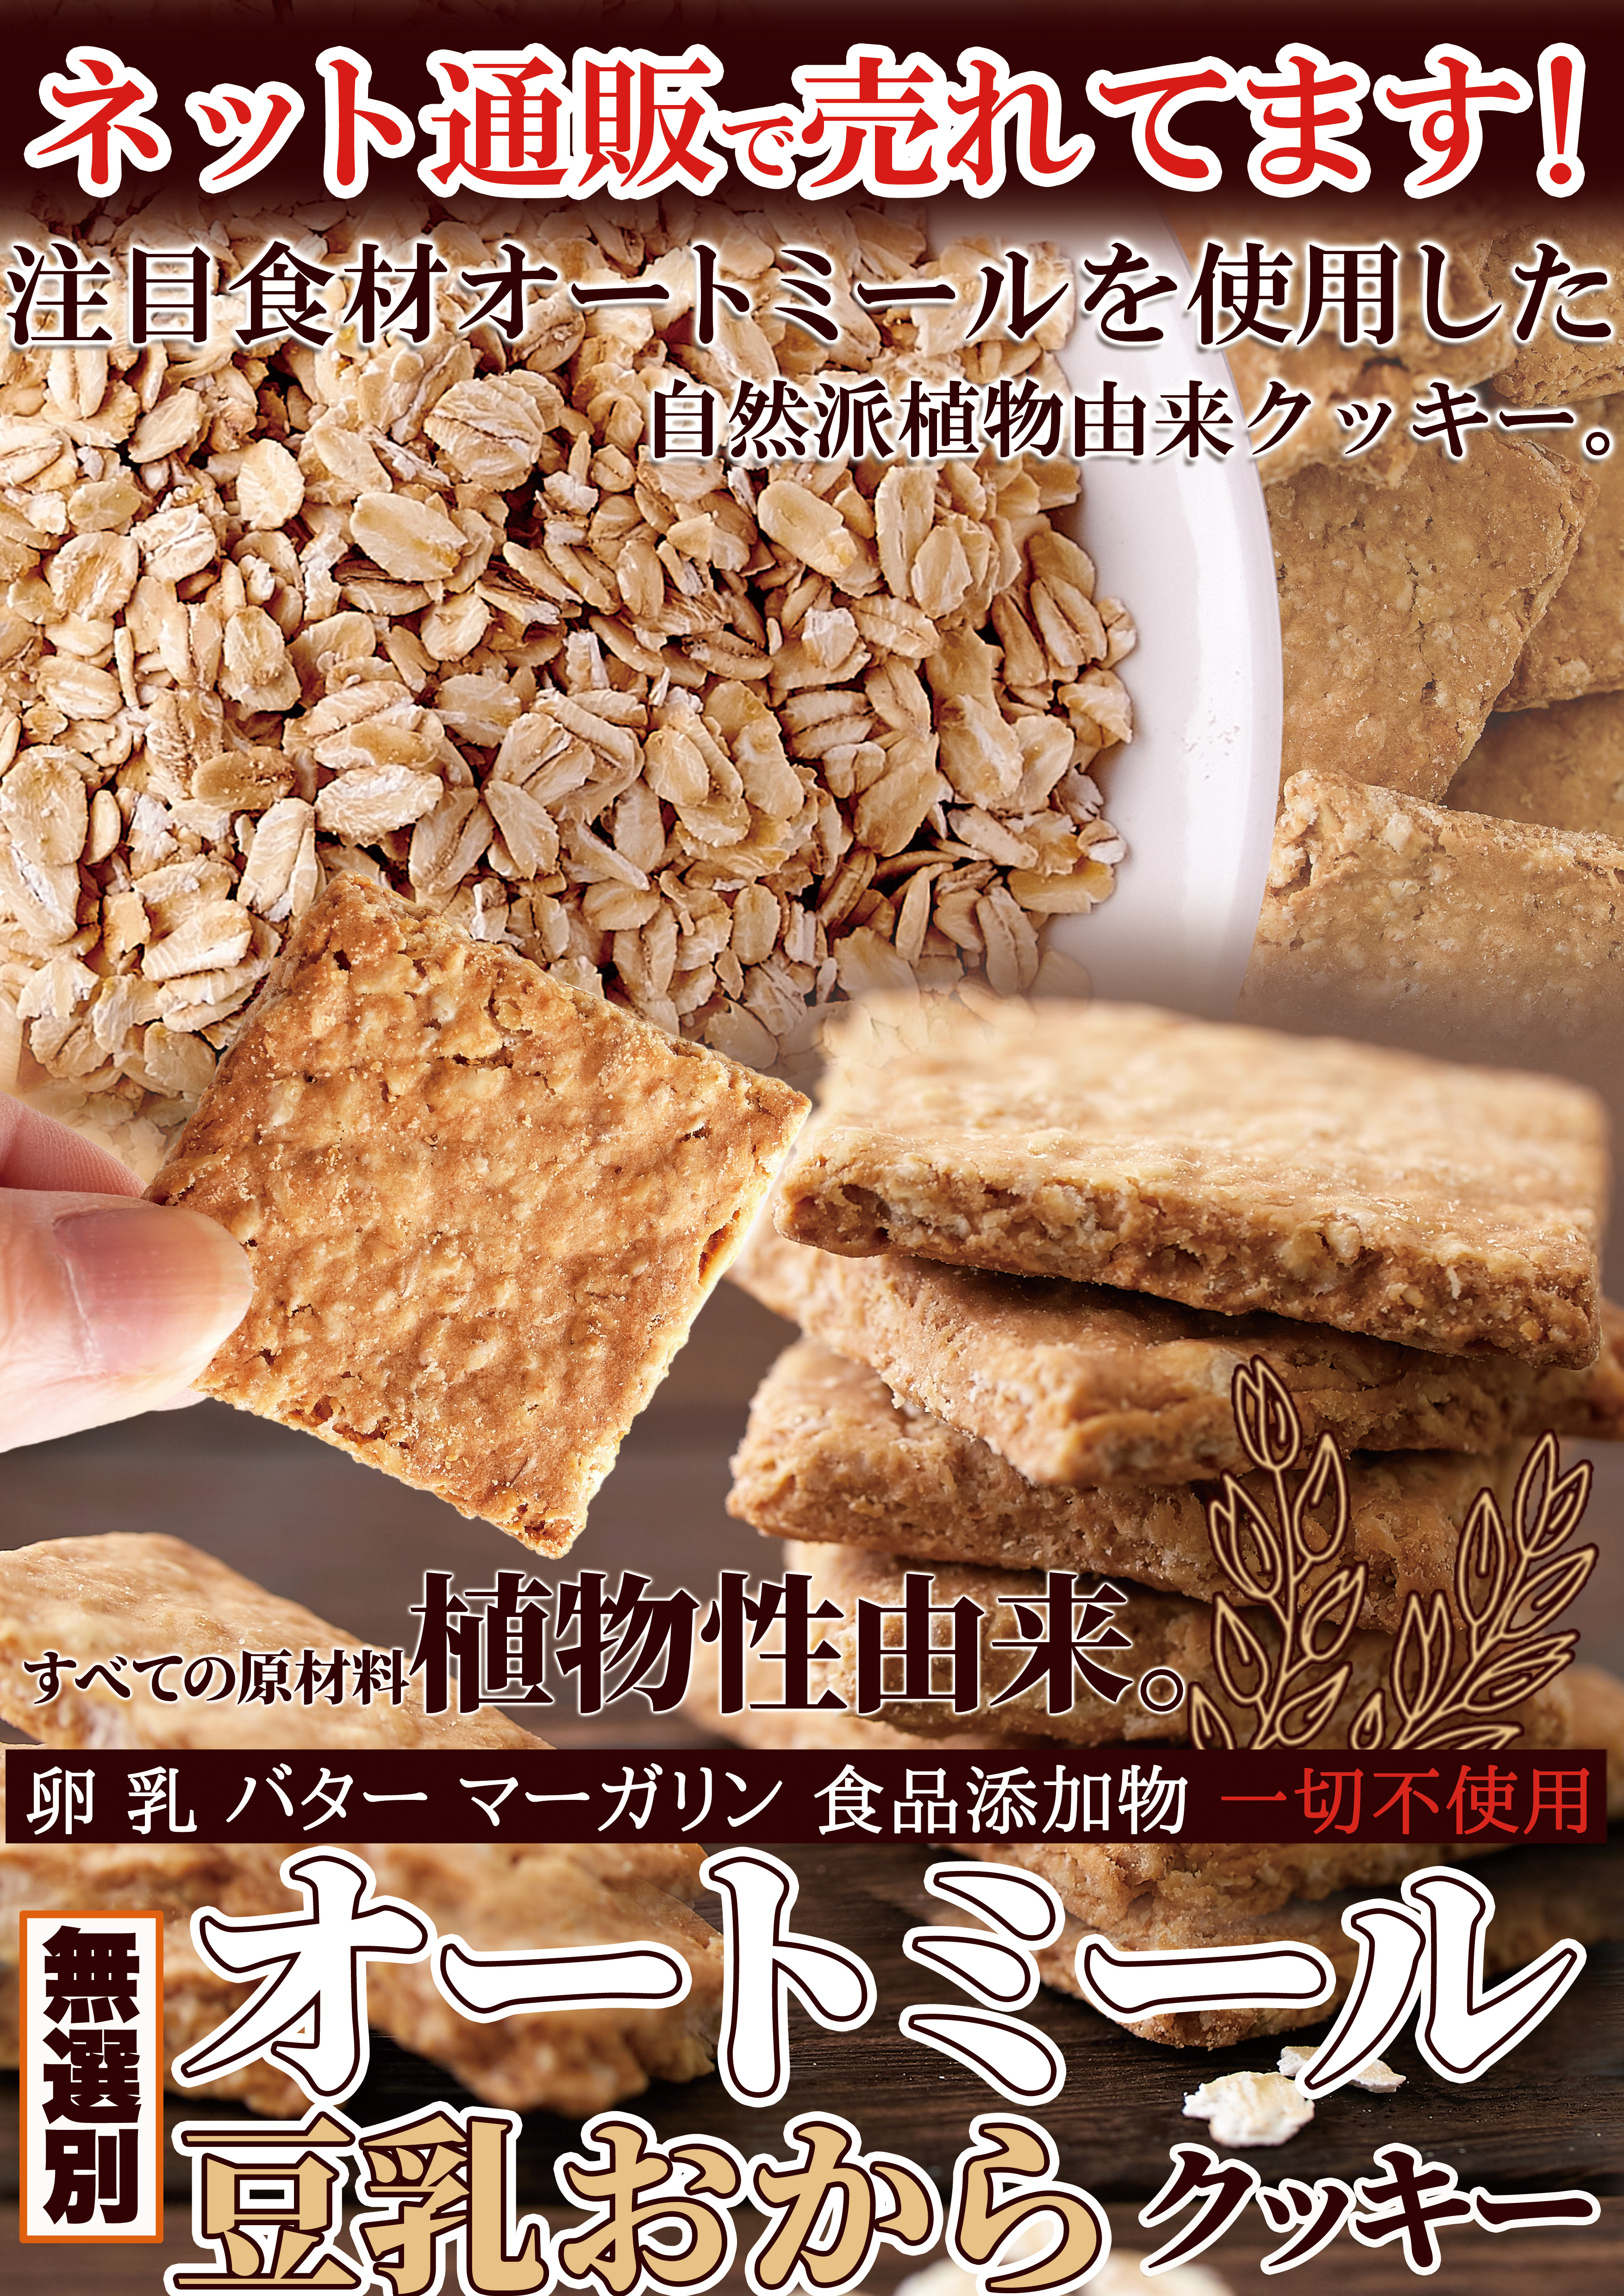 ※実店舗様限定※【無選別】オートミール豆乳おからクッキー175g